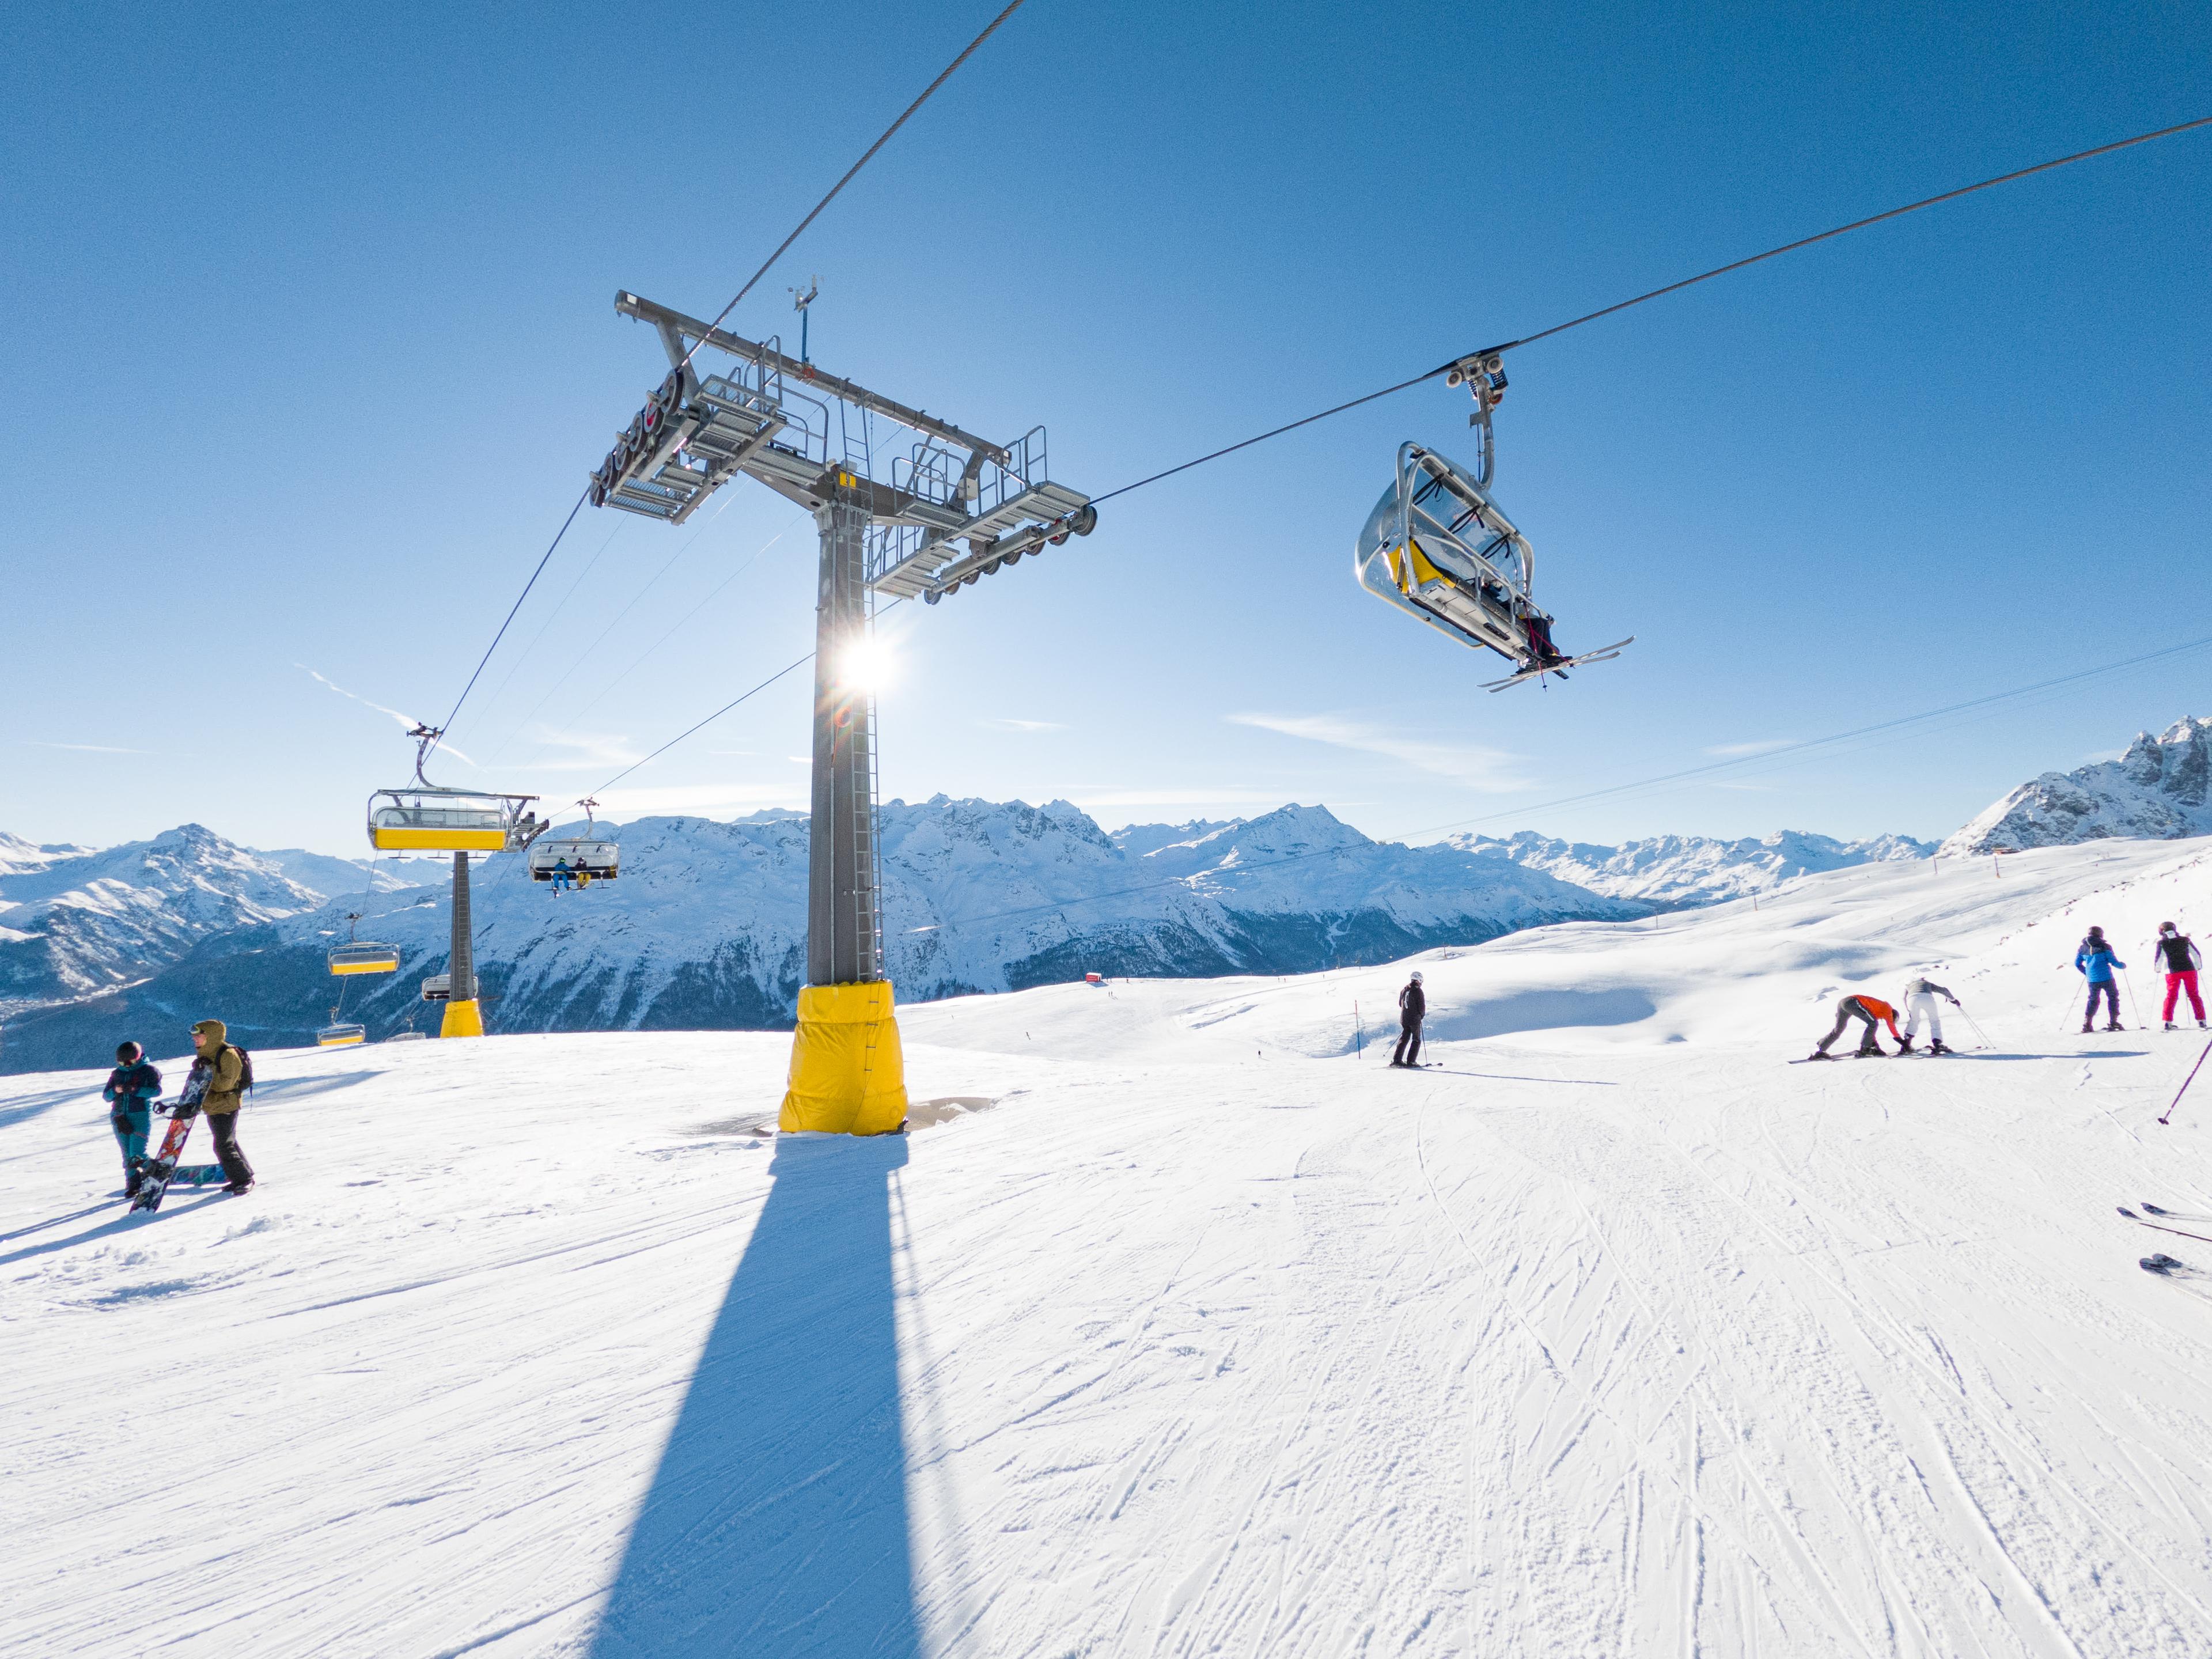 FIS chairlift, Corviglia, St. Moritz